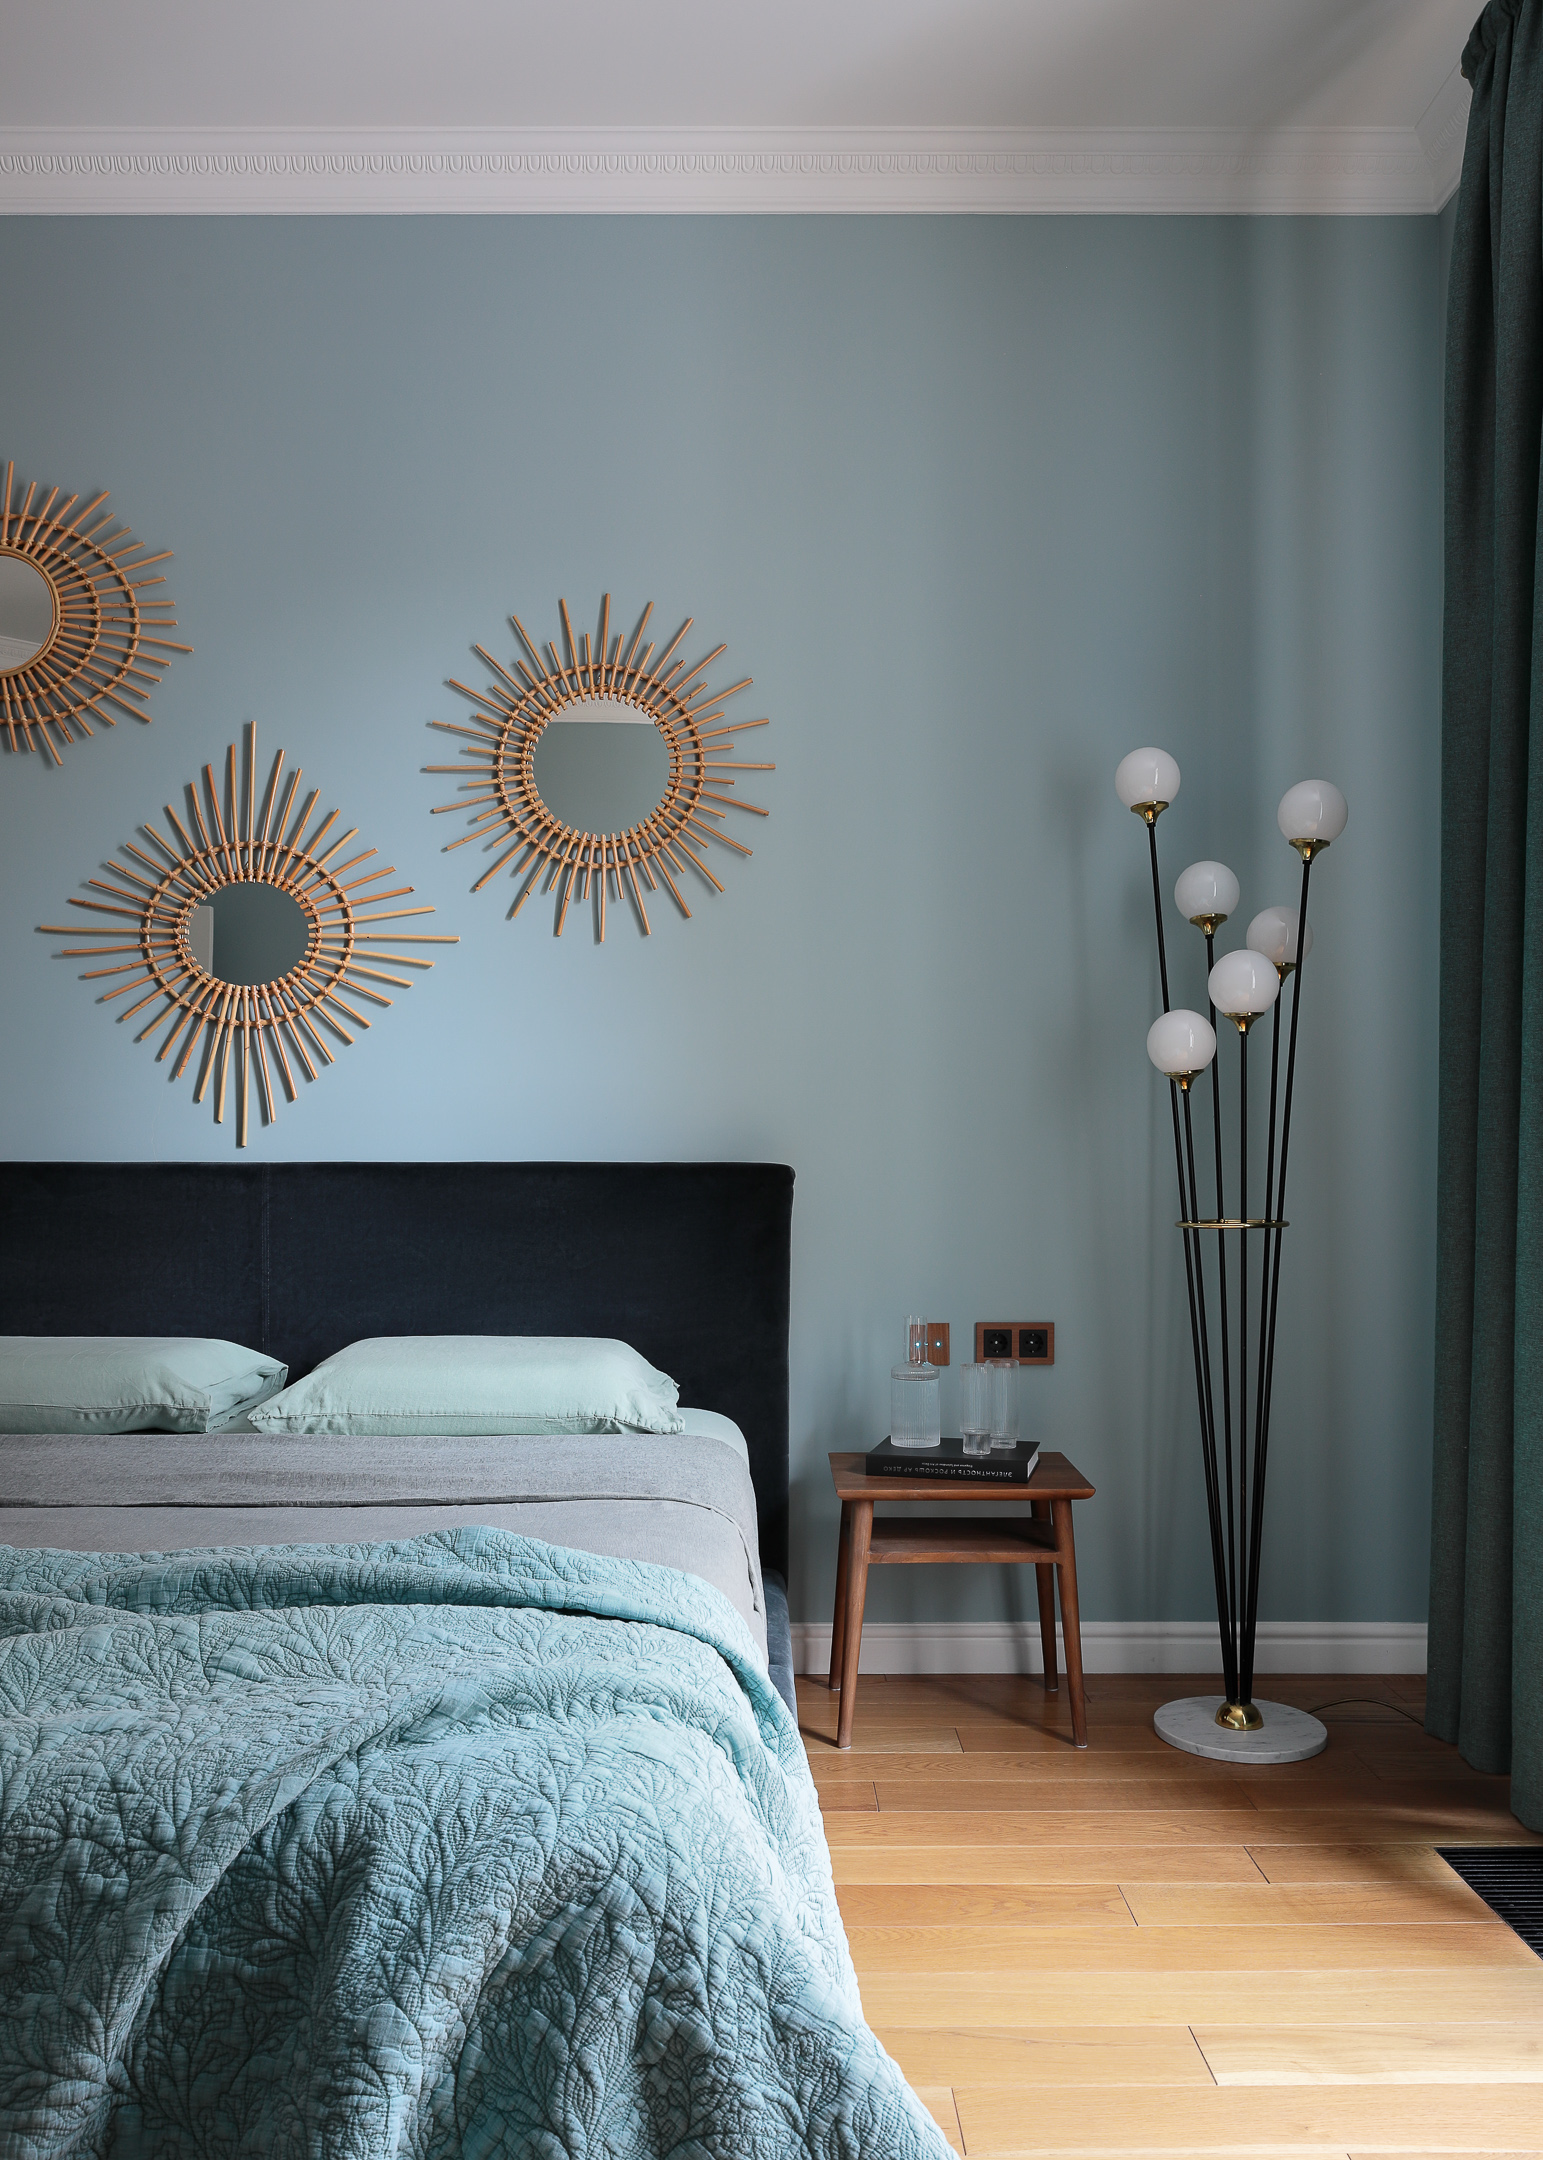 Стена над изголовьем кровати: 10 идей декора | myDecor